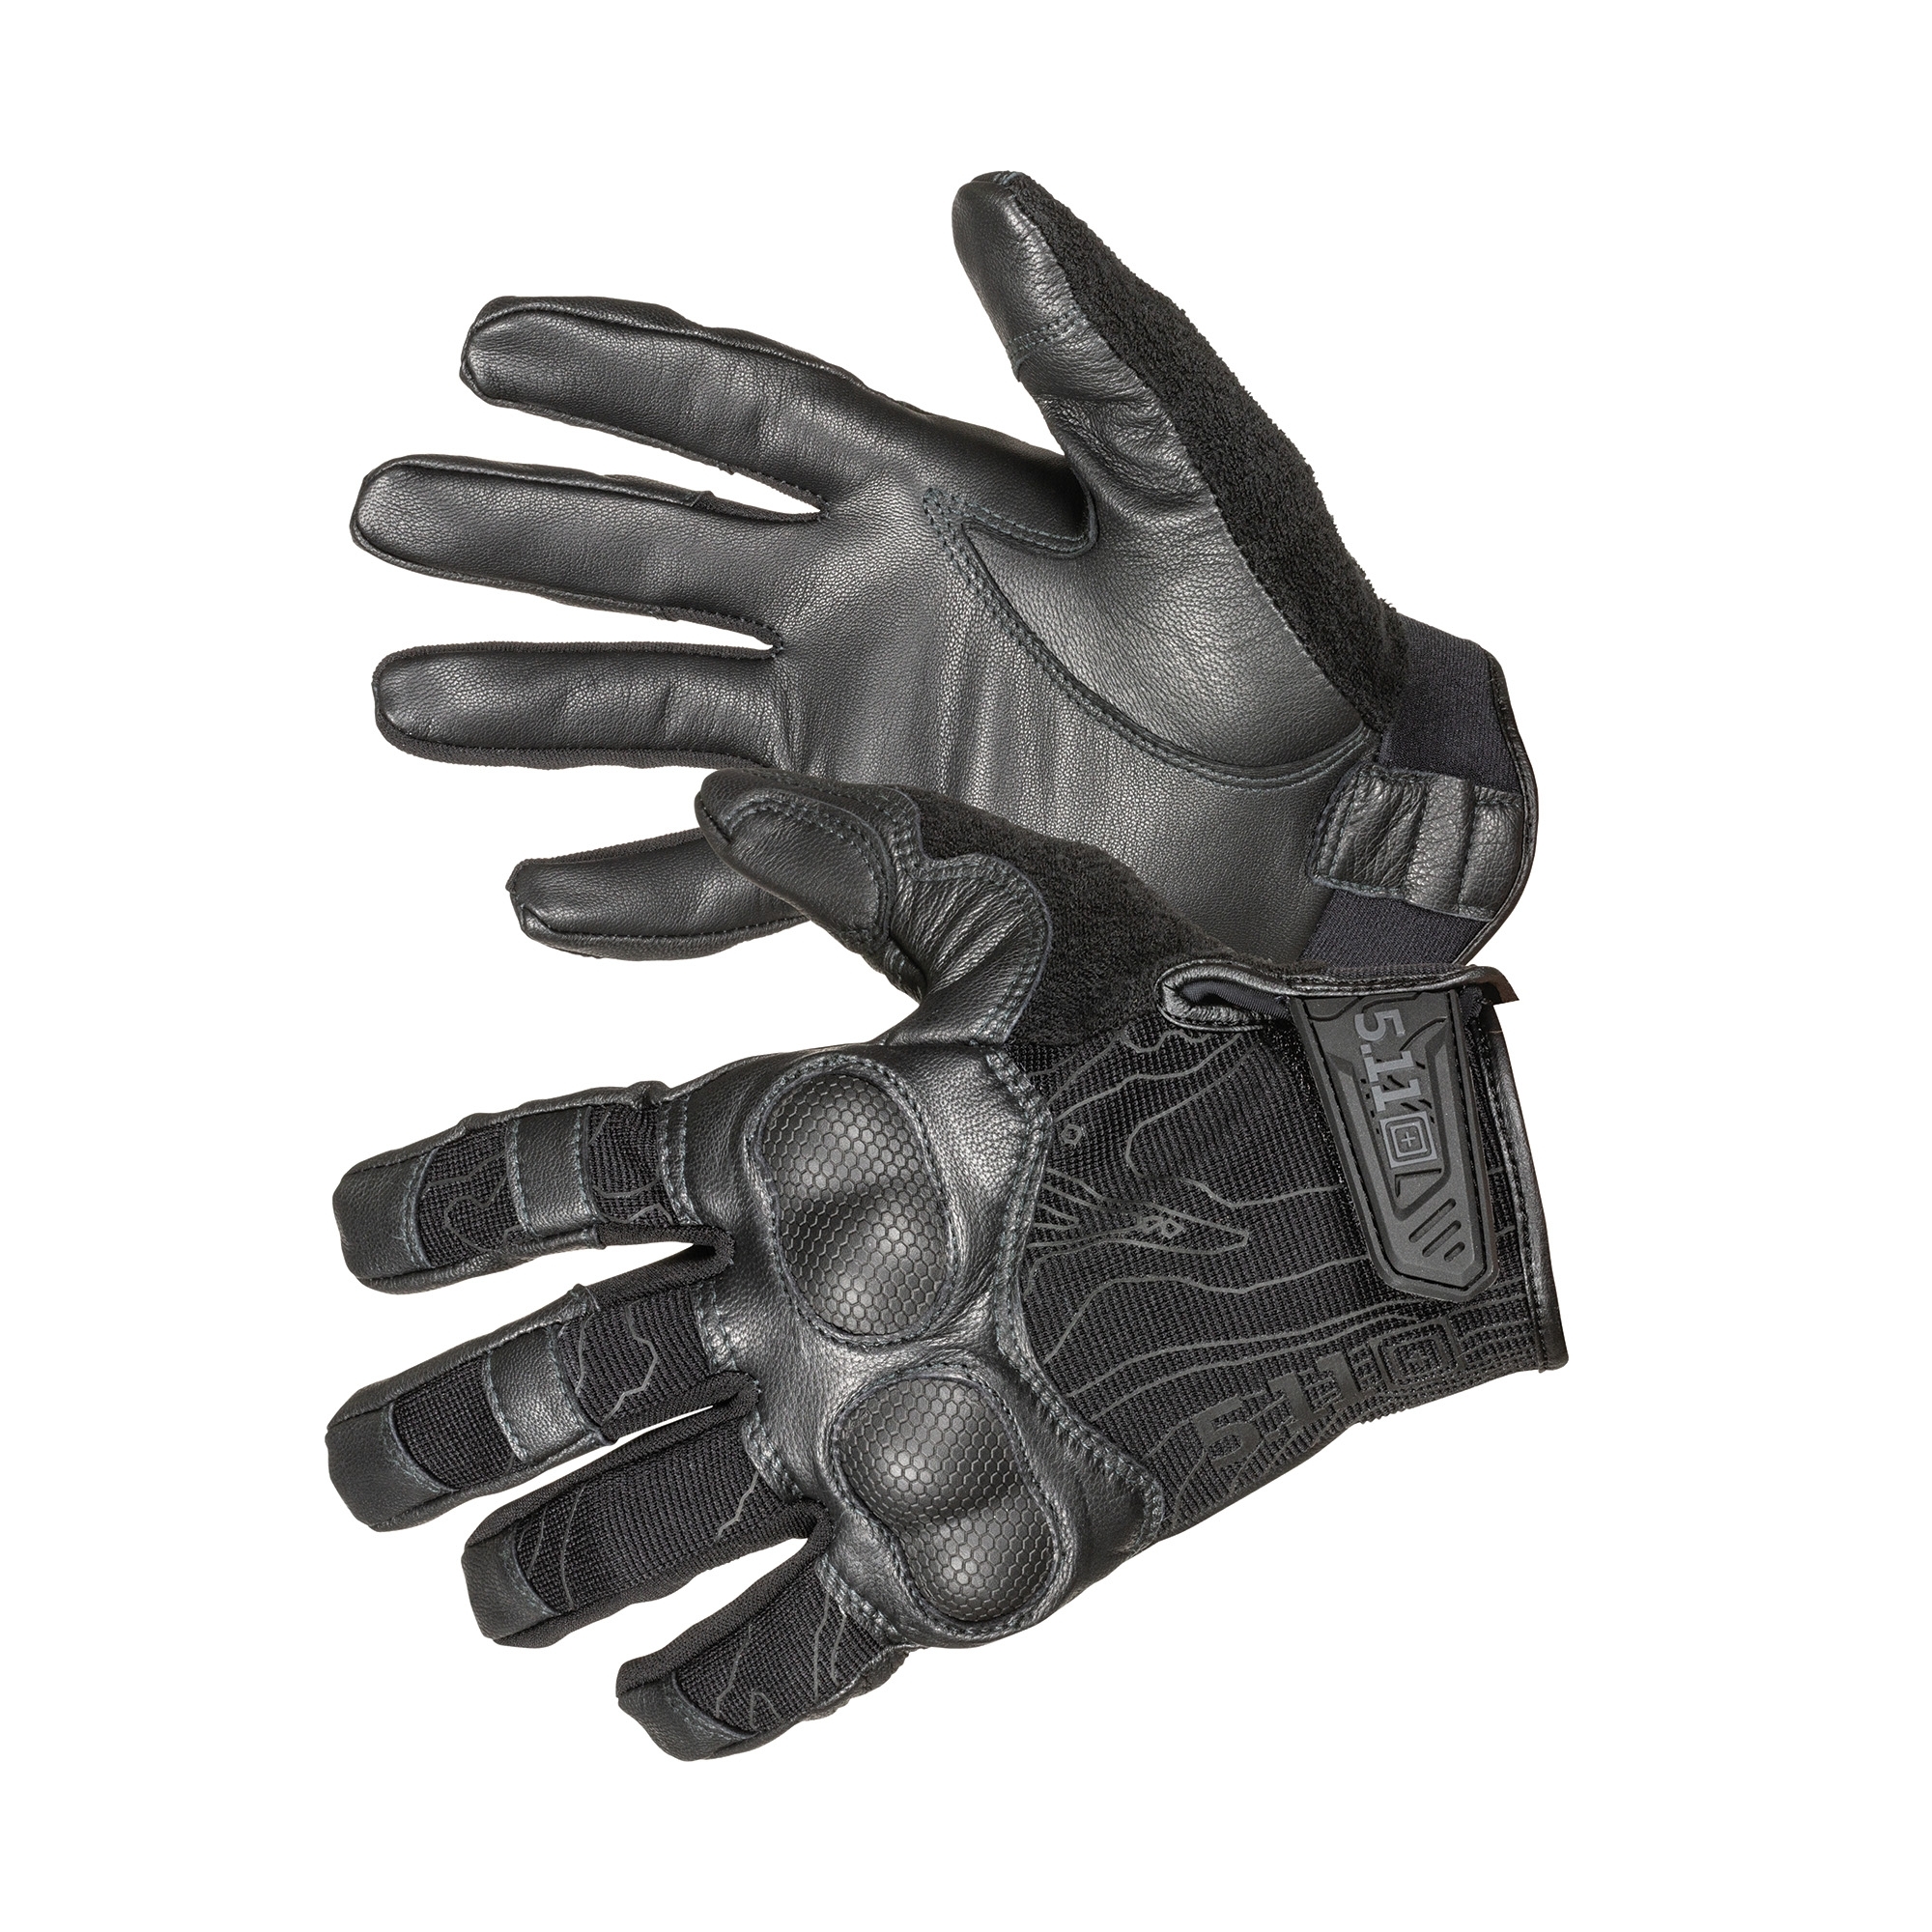 Тактические перчатки Hard Time 2 Black, 5.11 Tactical